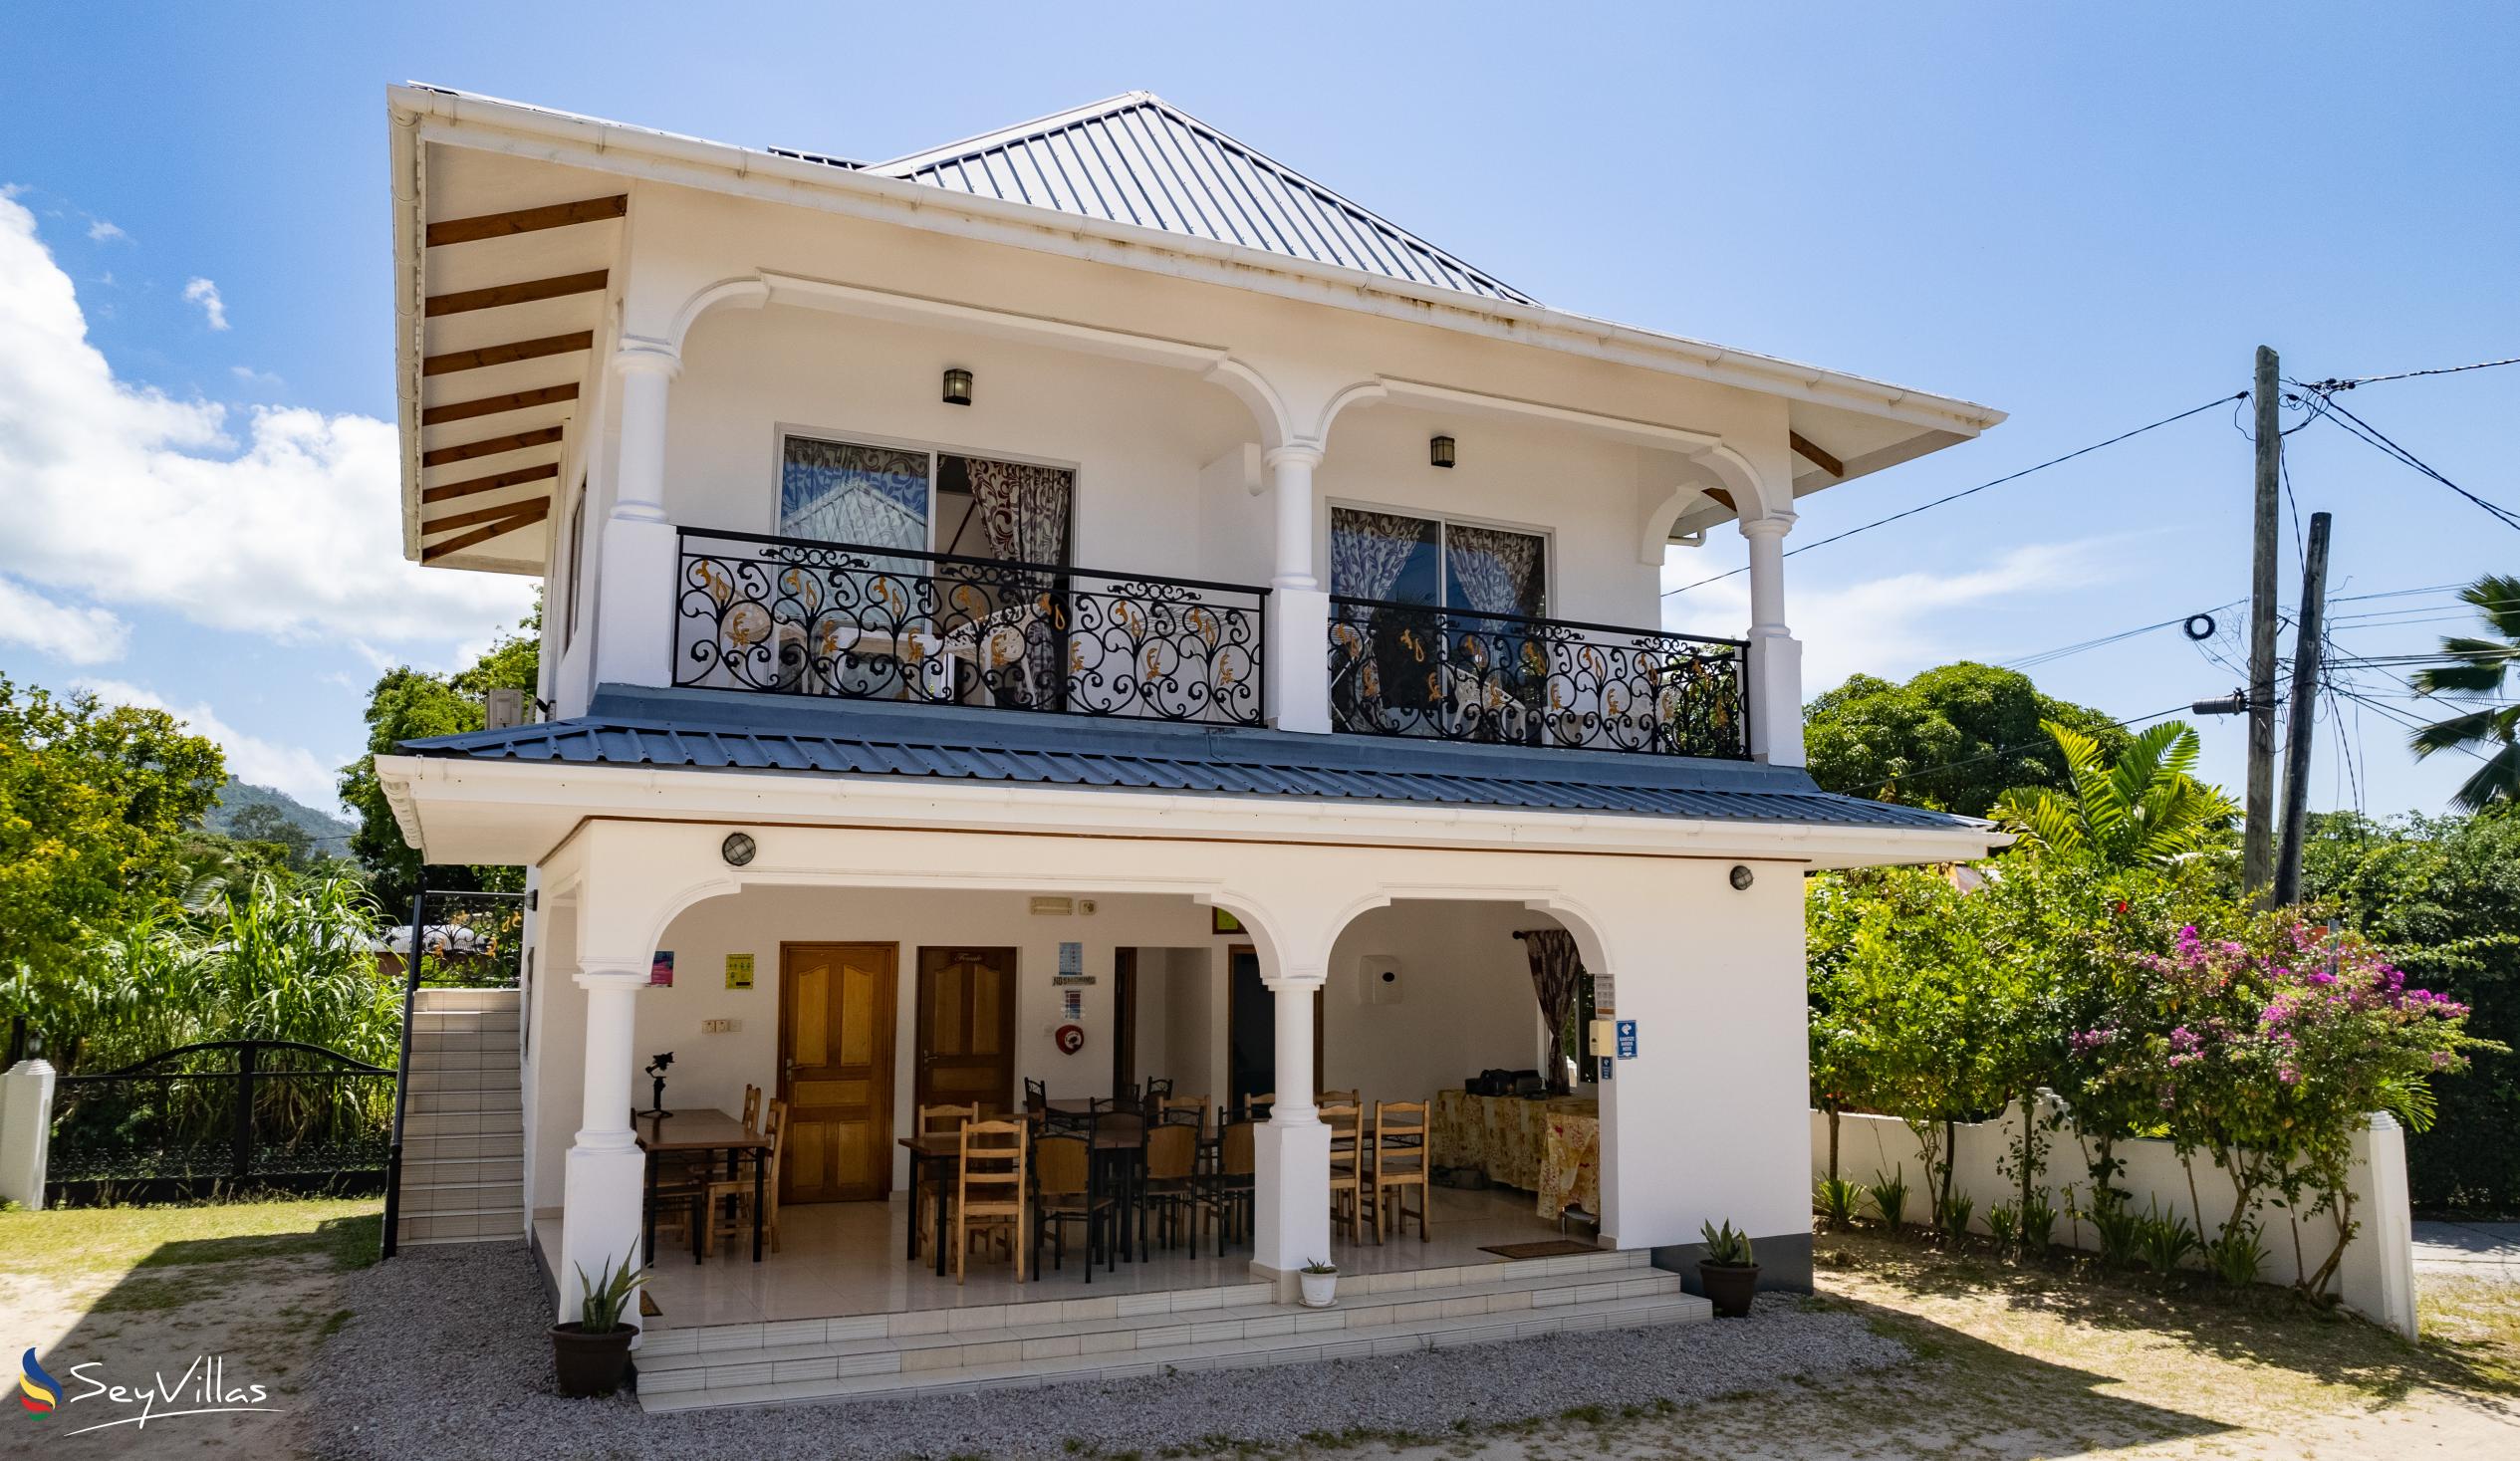 Foto 5: Casadani Luxury Guest House - Aussenbereich - Praslin (Seychellen)